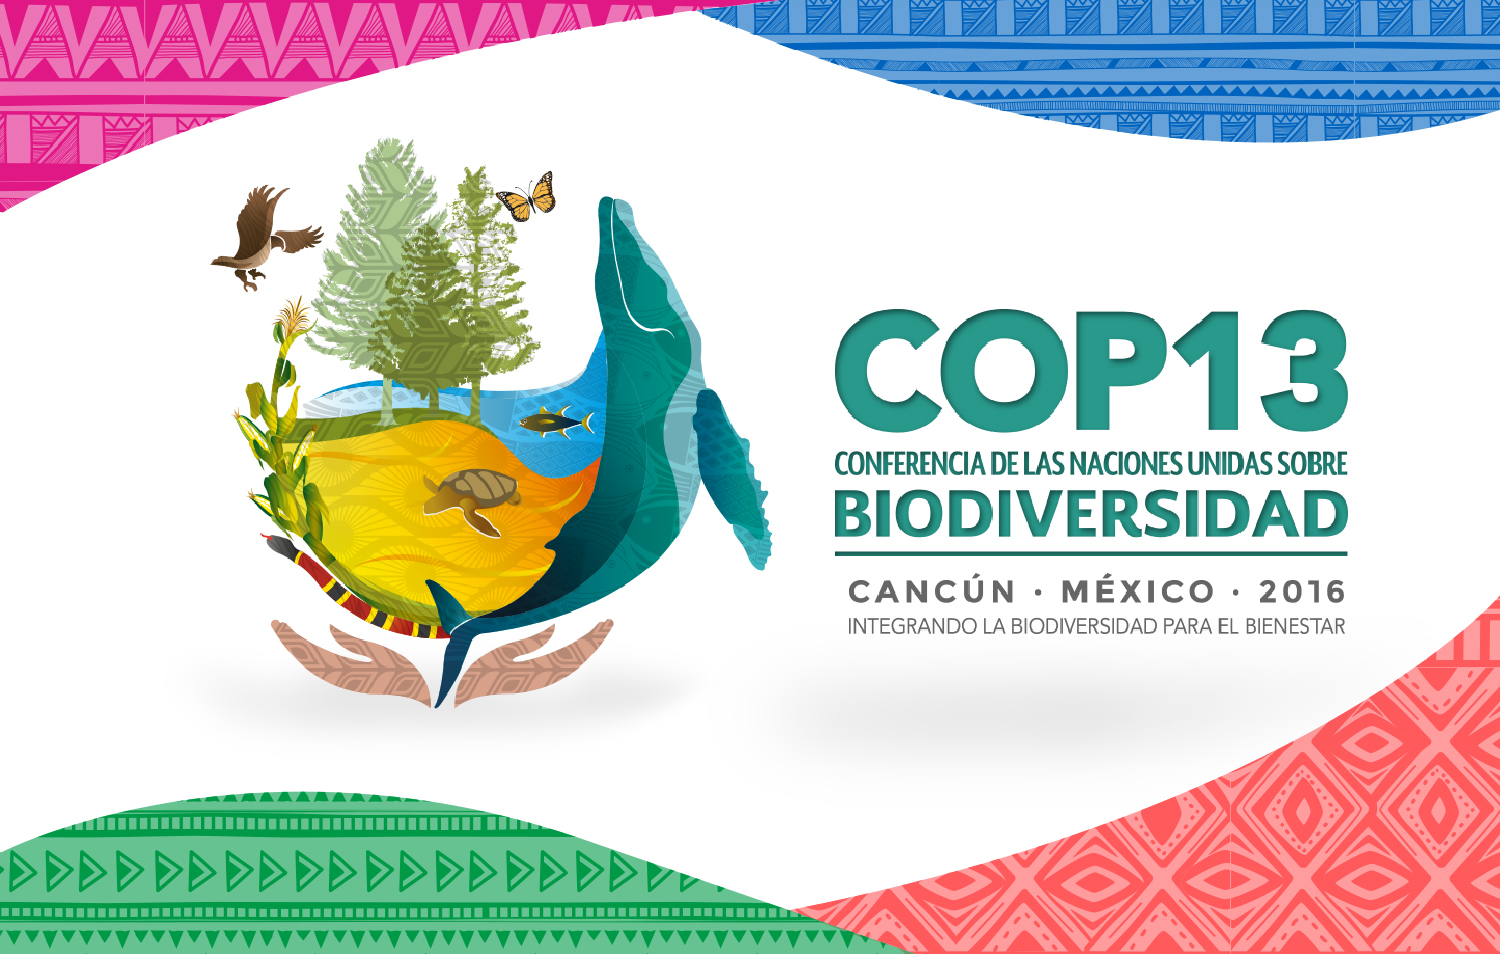 México rumbo a la COP13